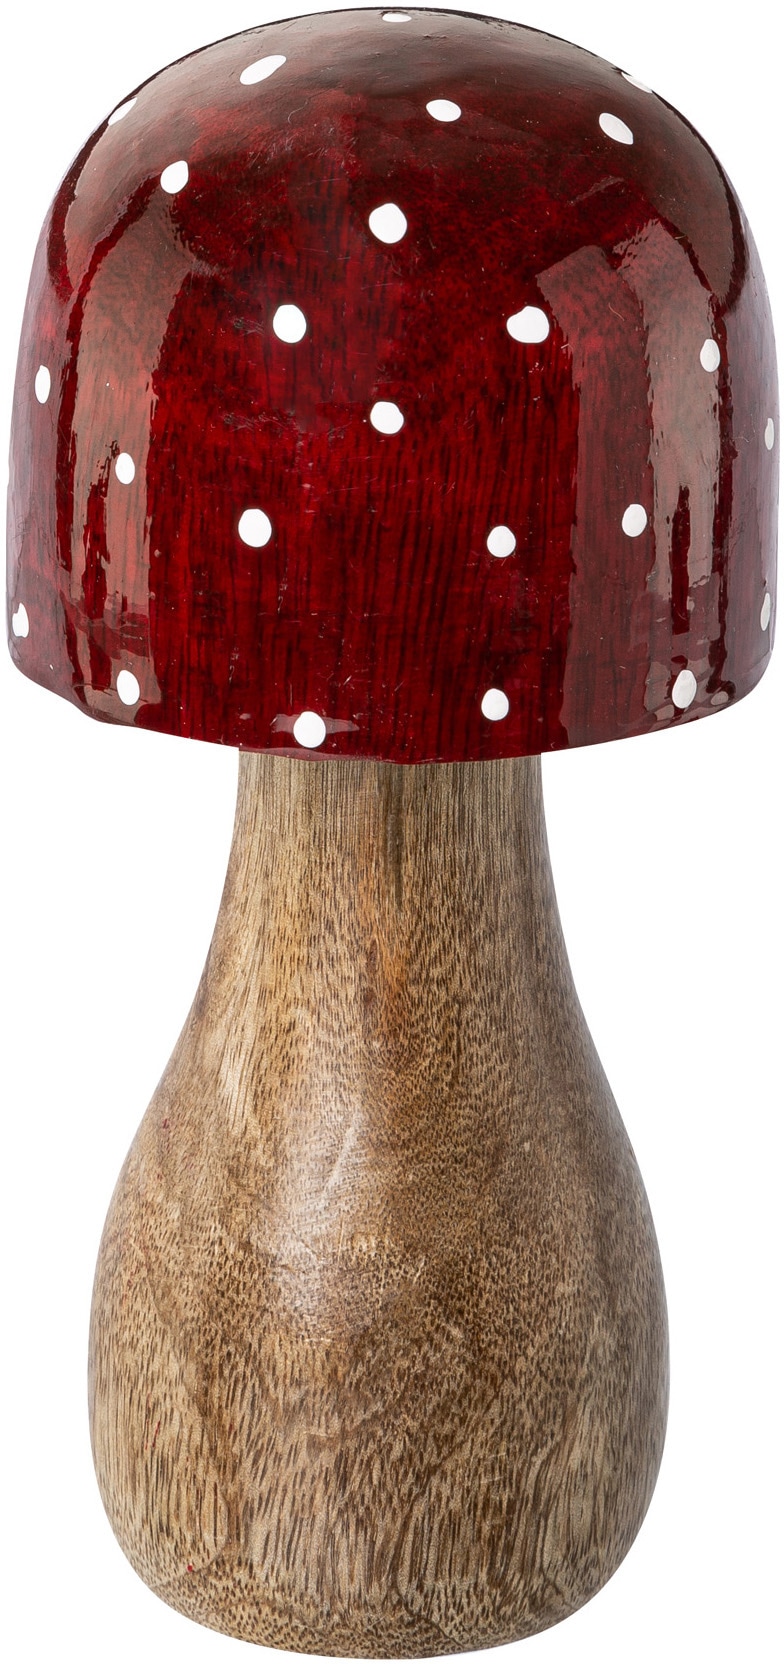 rot »Fliegenpilz, rot«, mit leuchtenden Creativ Weihnachtsfigur Hüten kaufen deco Weihnachtsdeko bequem